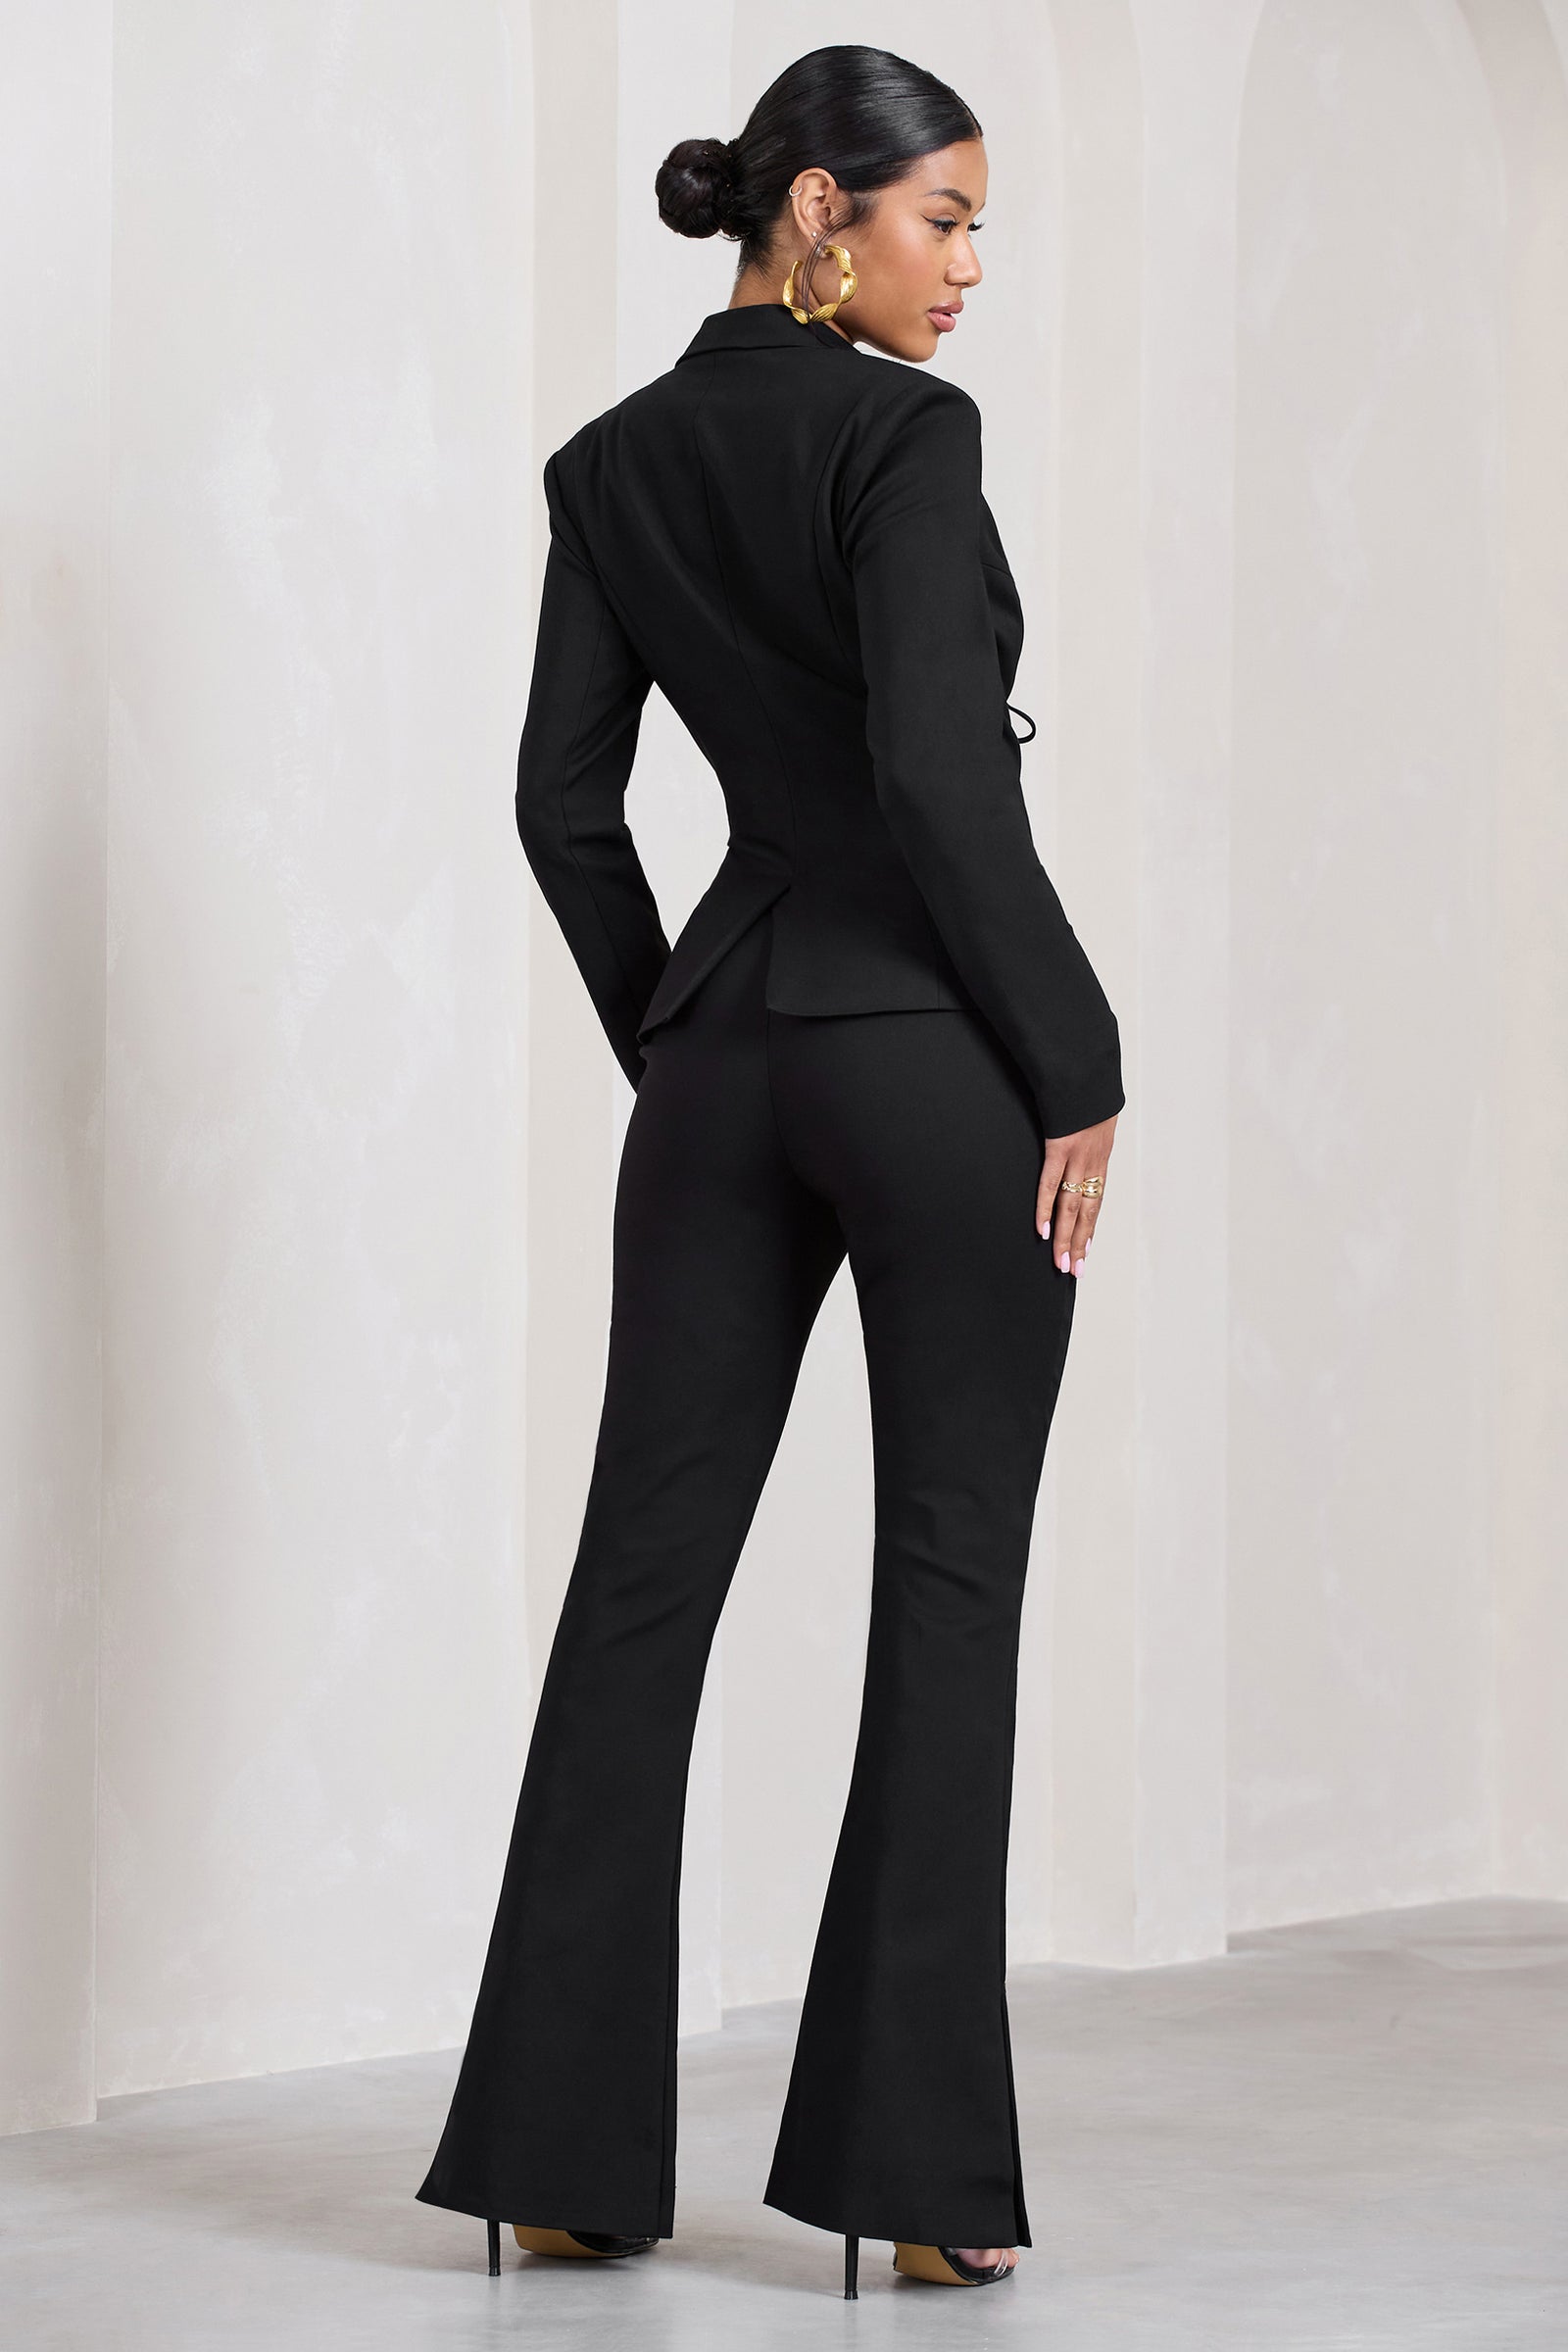 Black Suit Pants For Women Korean 2 Buttons Wide Leg Trousers